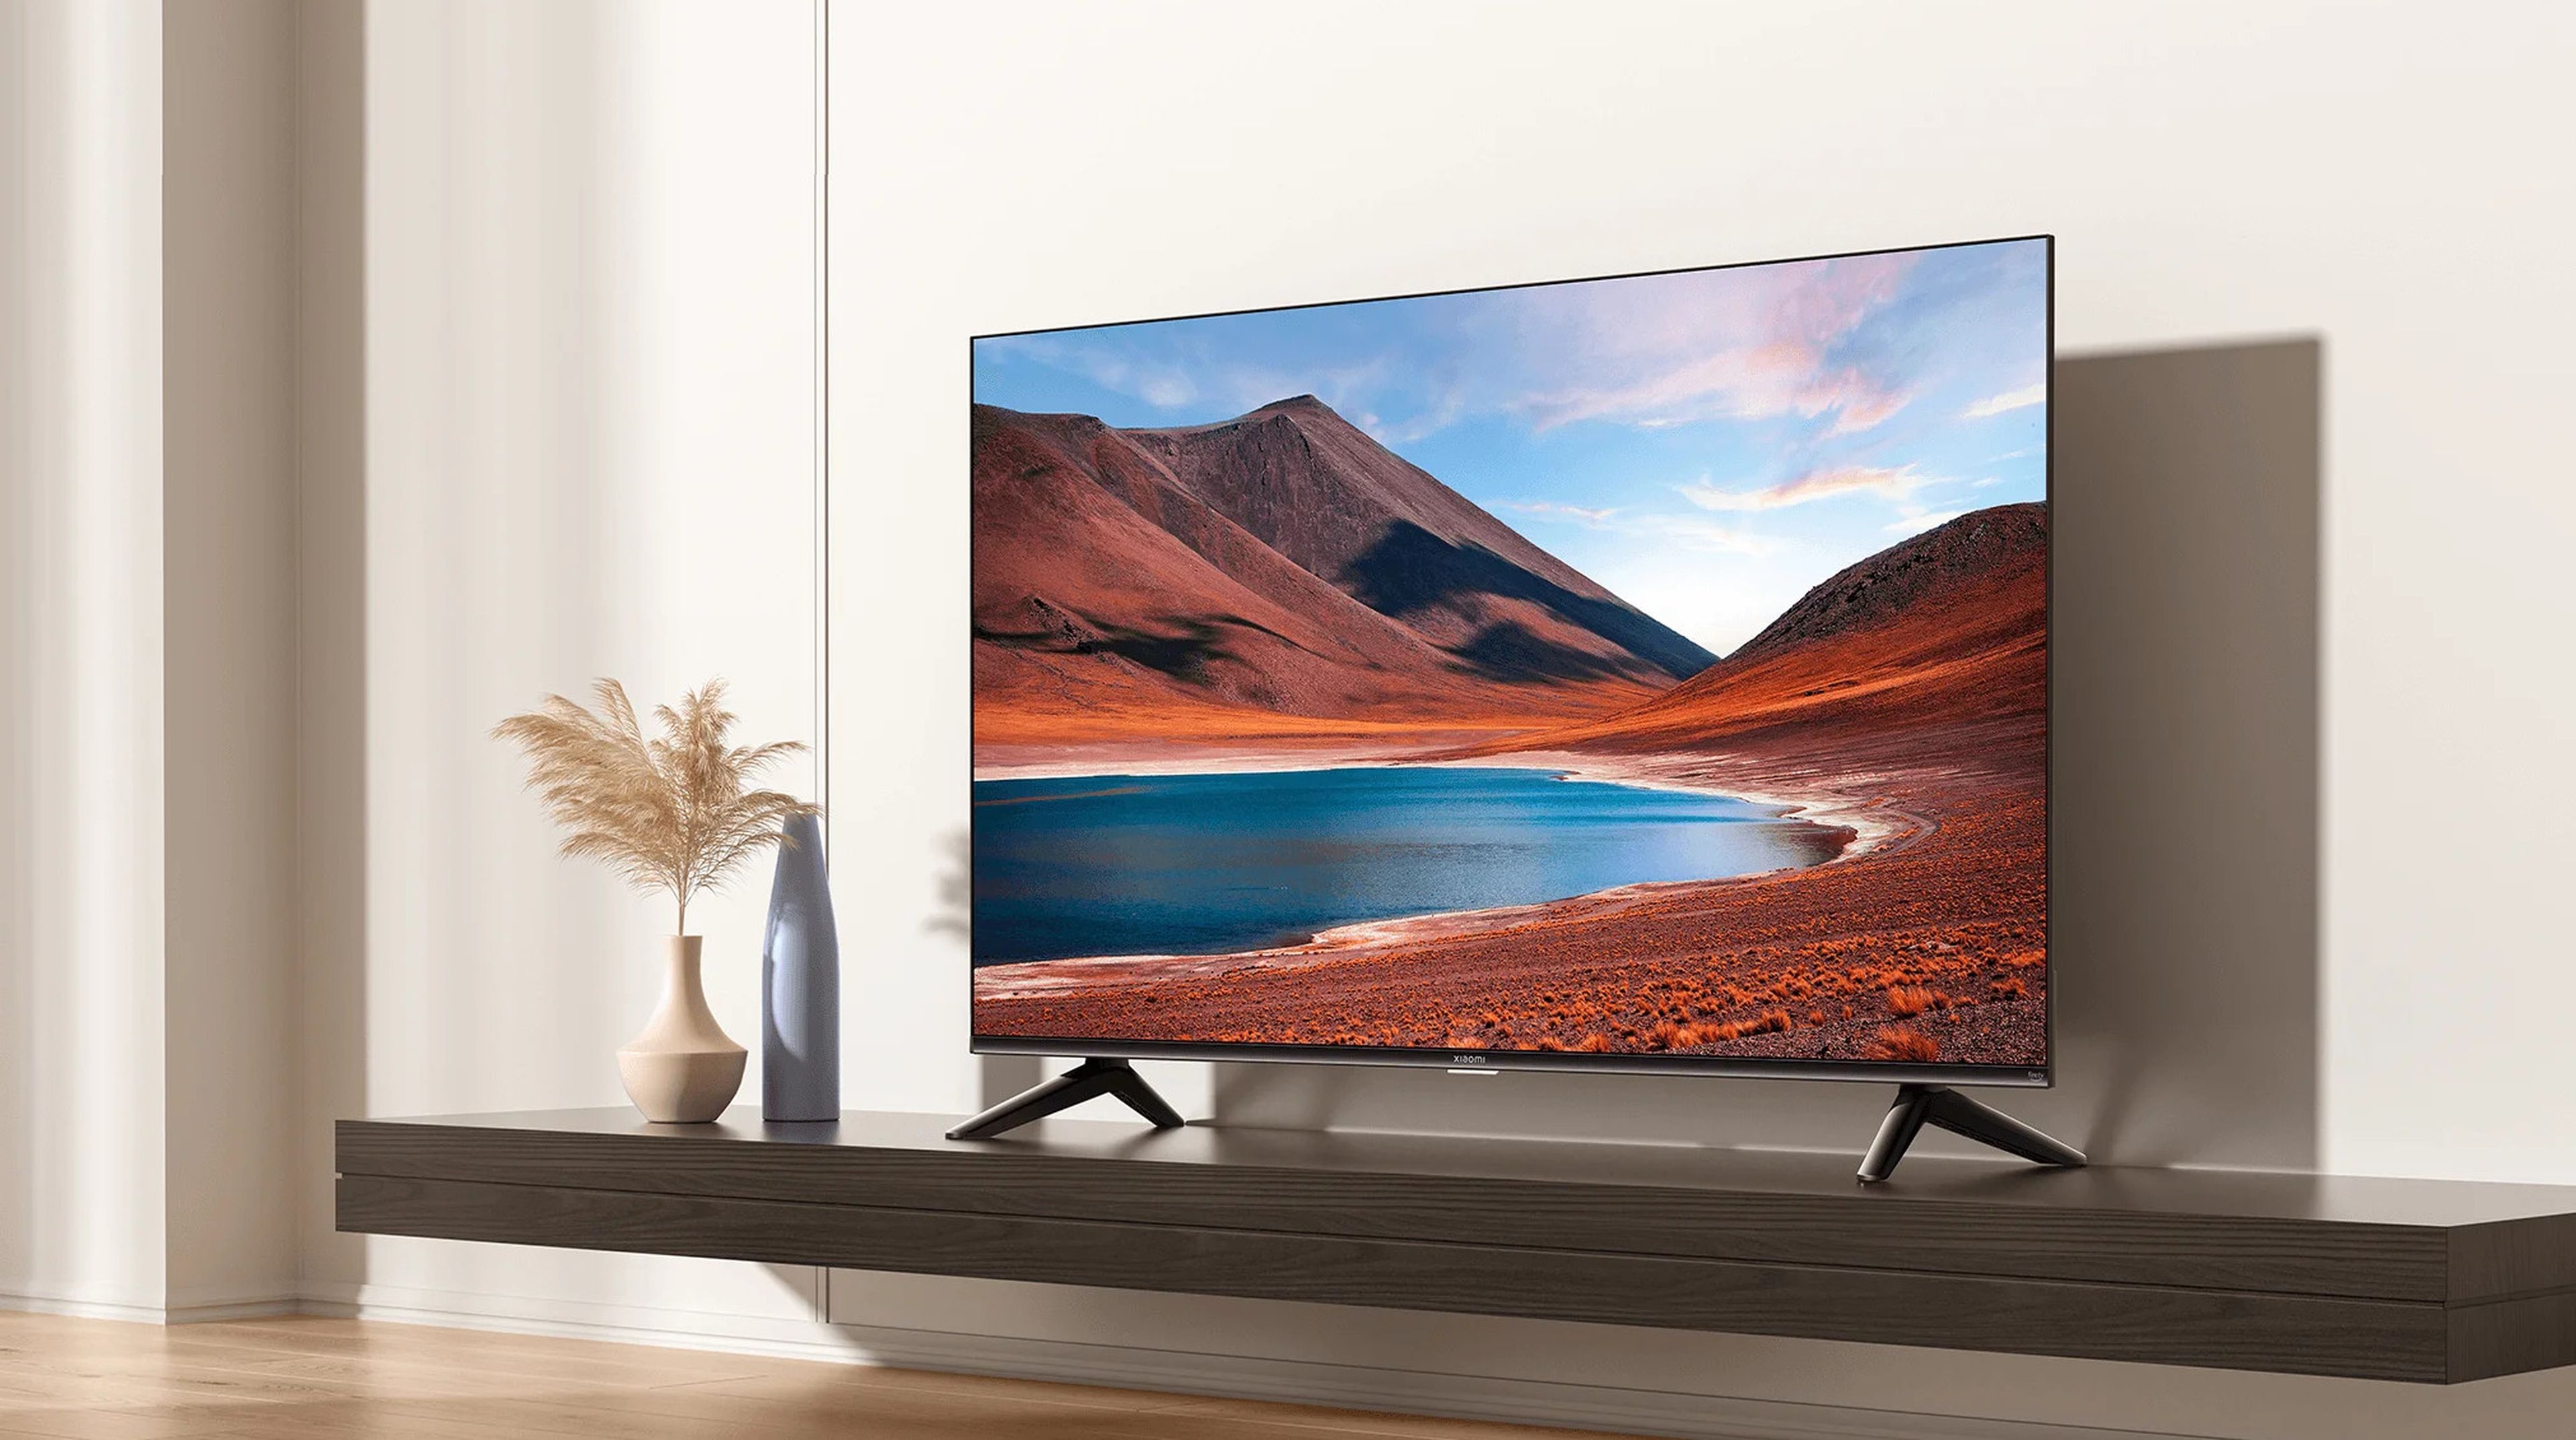 Xiaomi lanza un nuevo televisor barato: es extremadamente fino y